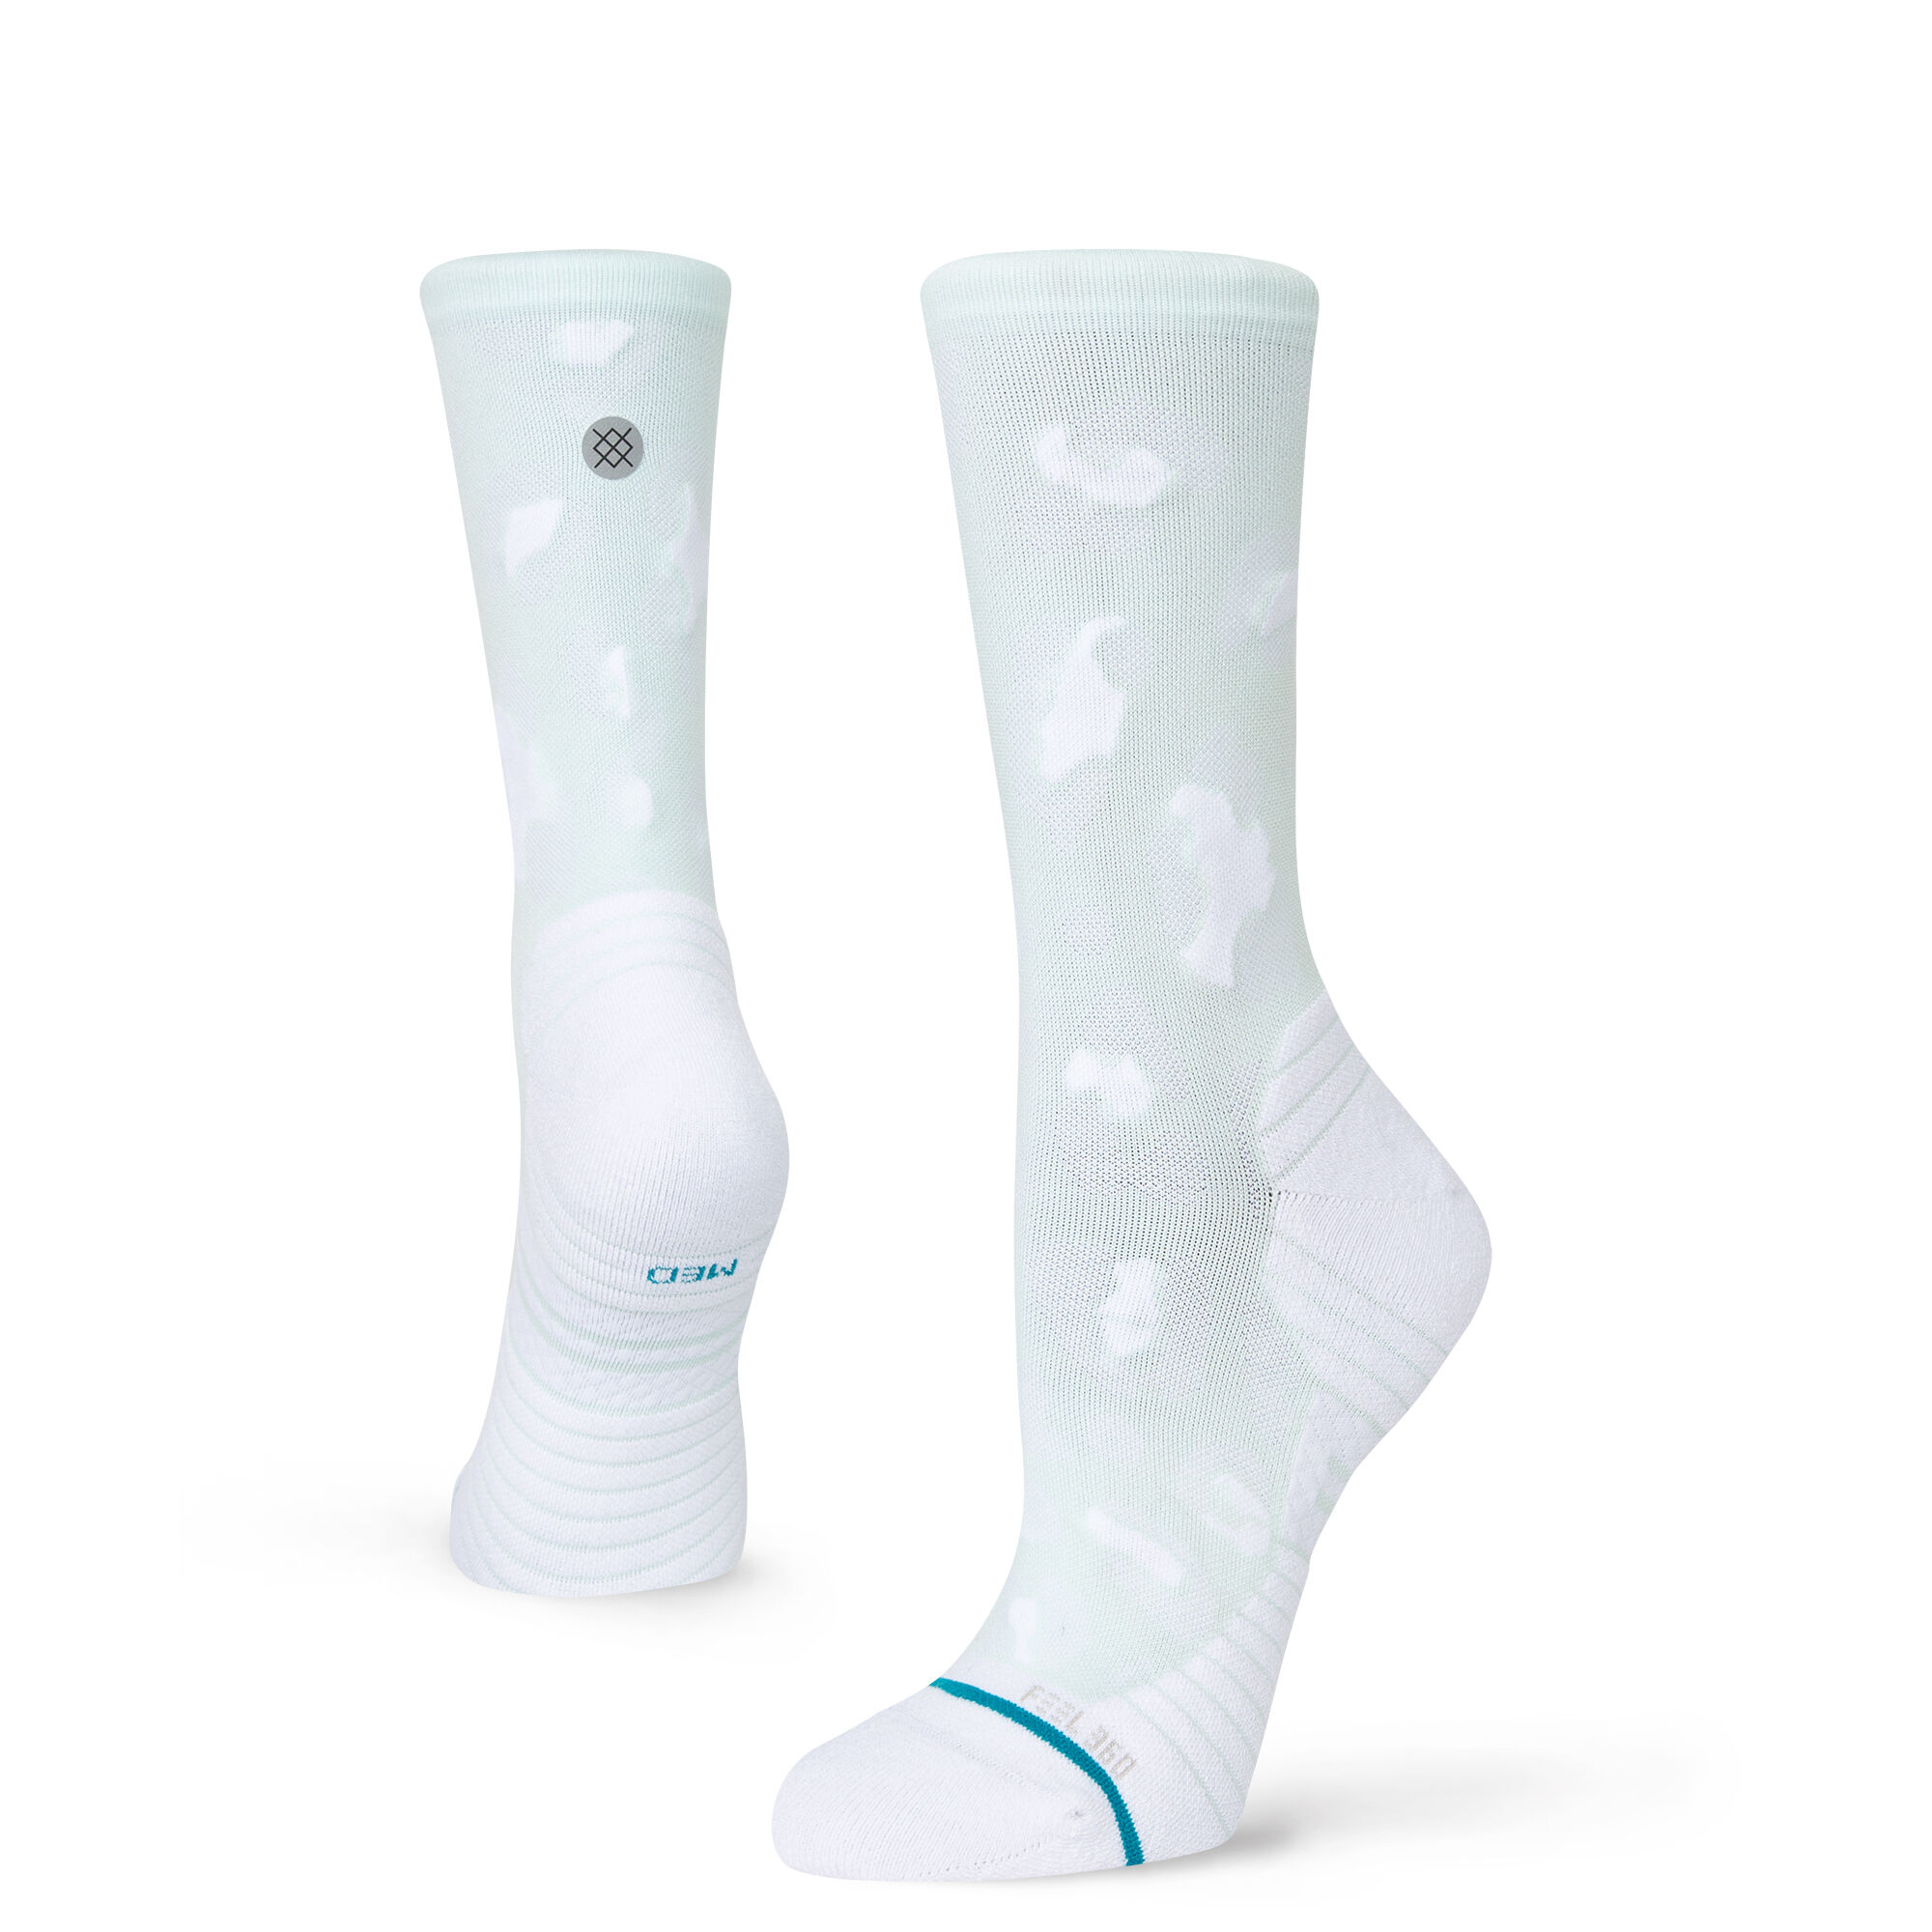 Stance NEW Men's Domino Socks Natural BNWT 